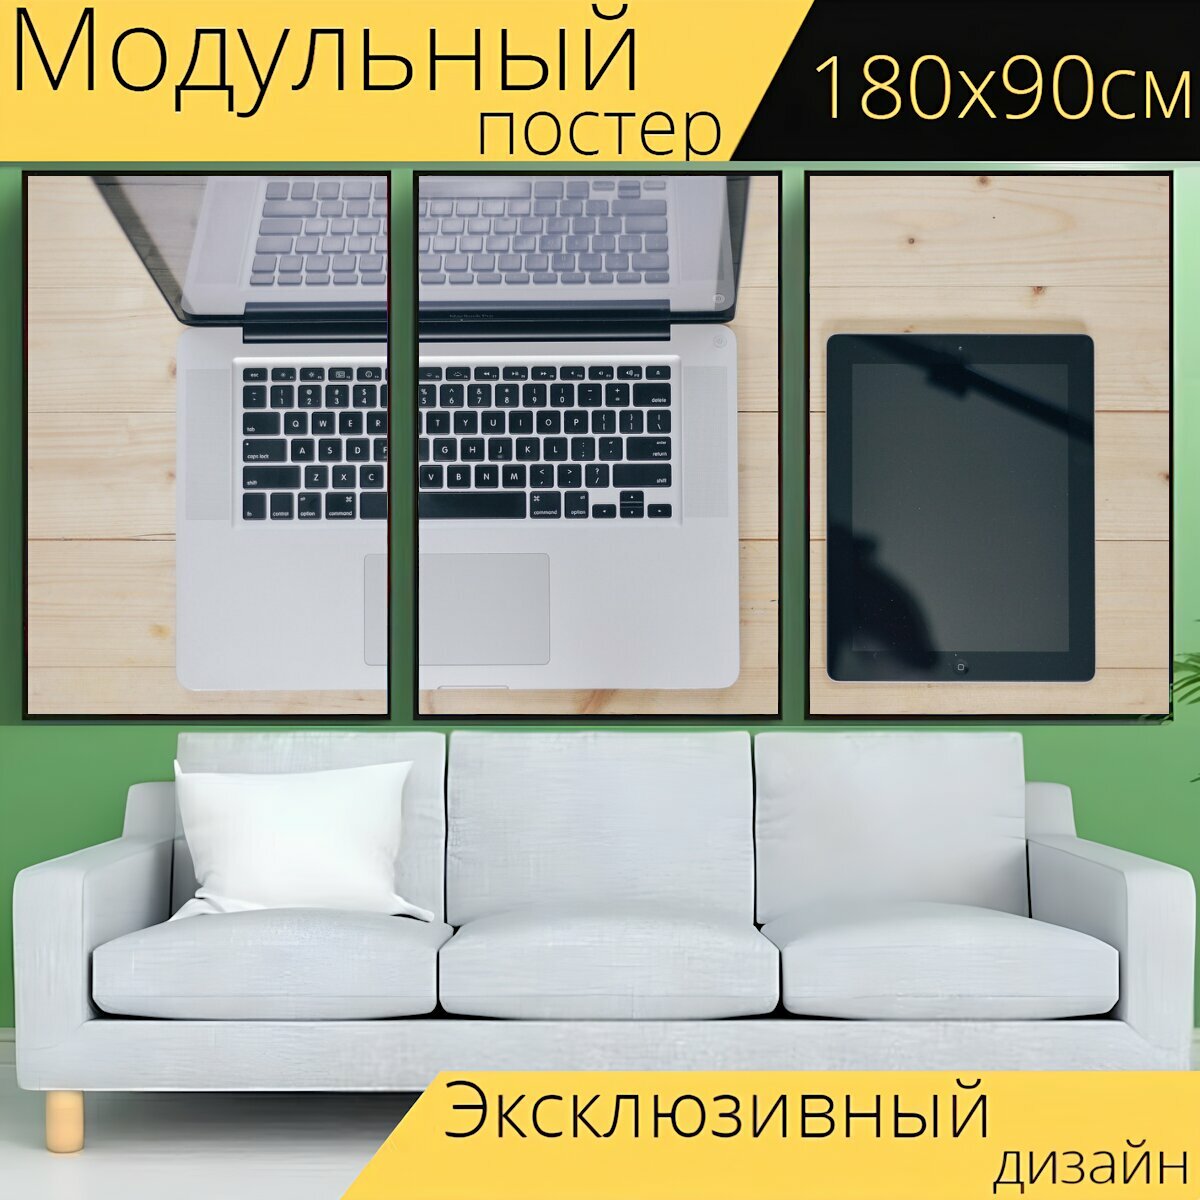 Модульный постер "Стол письменный, ноутбук, планшет" 180 x 90 см. для интерьера